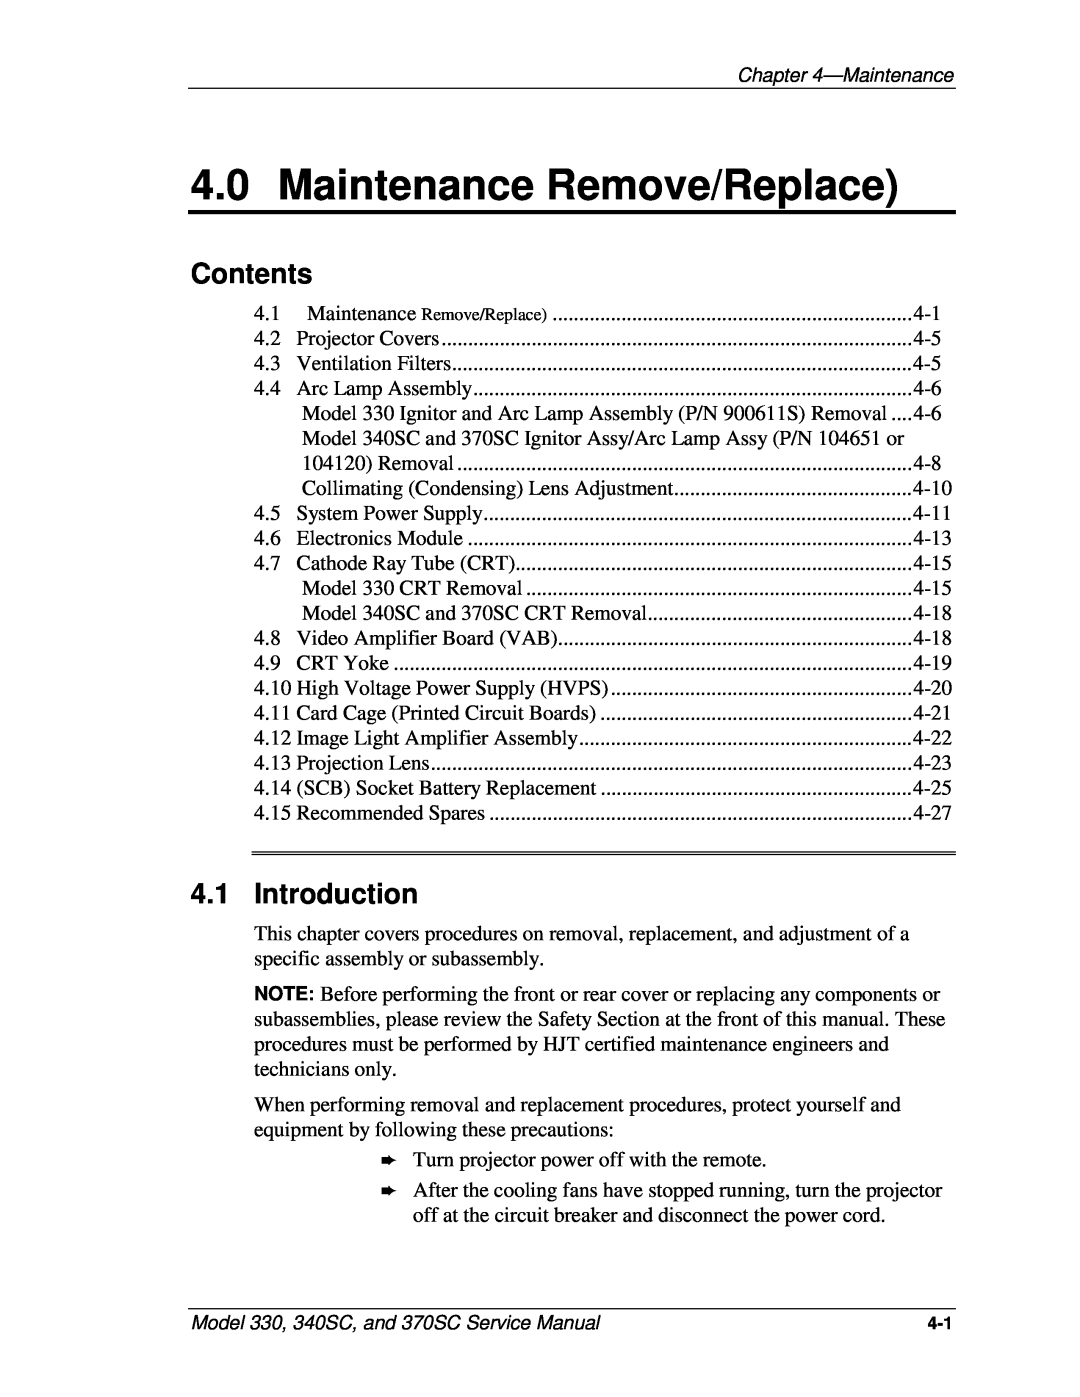 JVC 330, 370 SC, 340 SC service manual Maintenance Remove/Replace, Introduction, Contents 